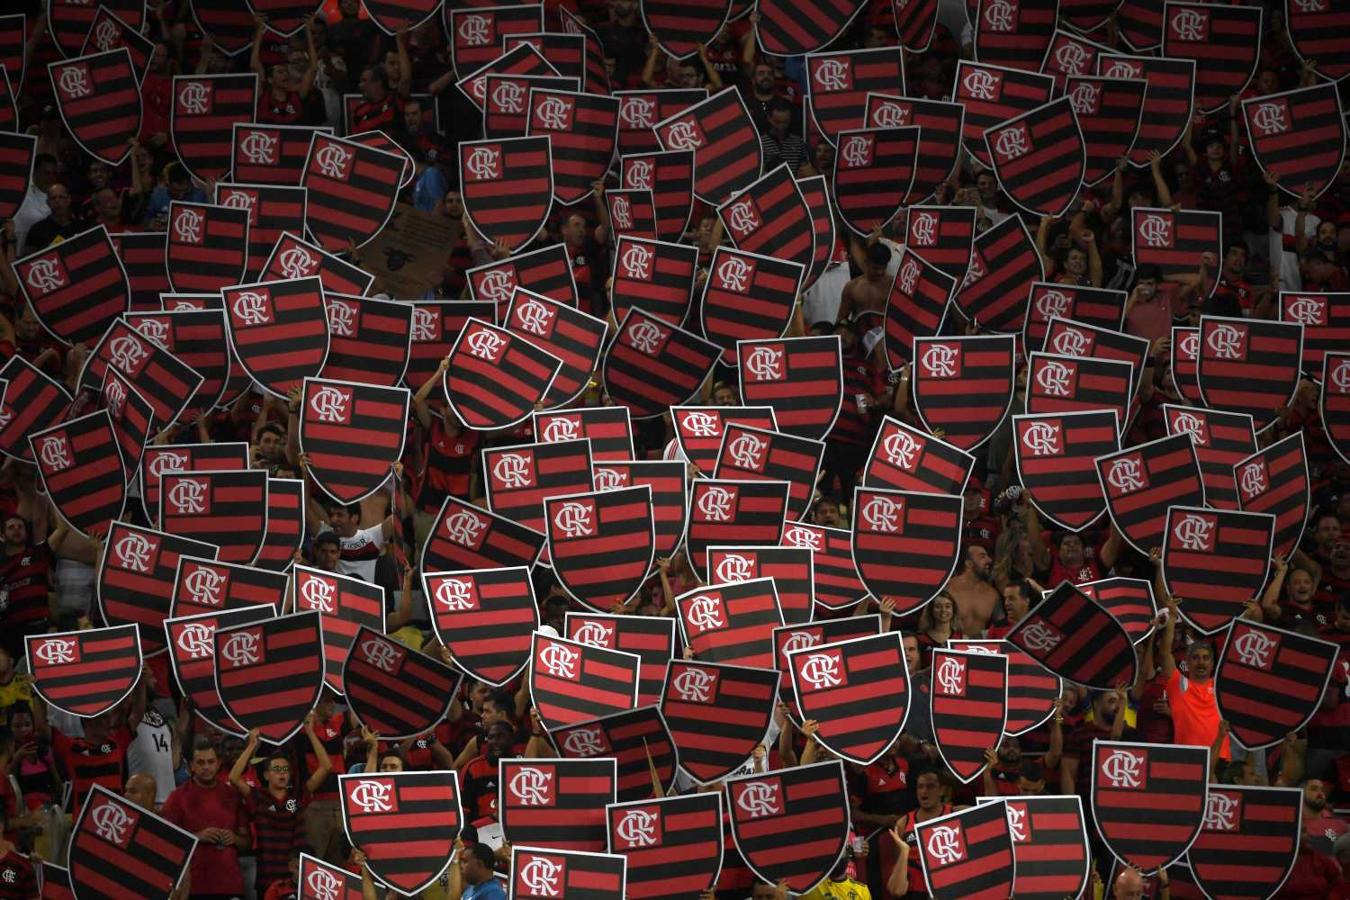 Hinchas del Flamengo en el partido de fútbol de la Copa Libertadores contra el equipo uruguayo Penarol en el estadio Maracaná